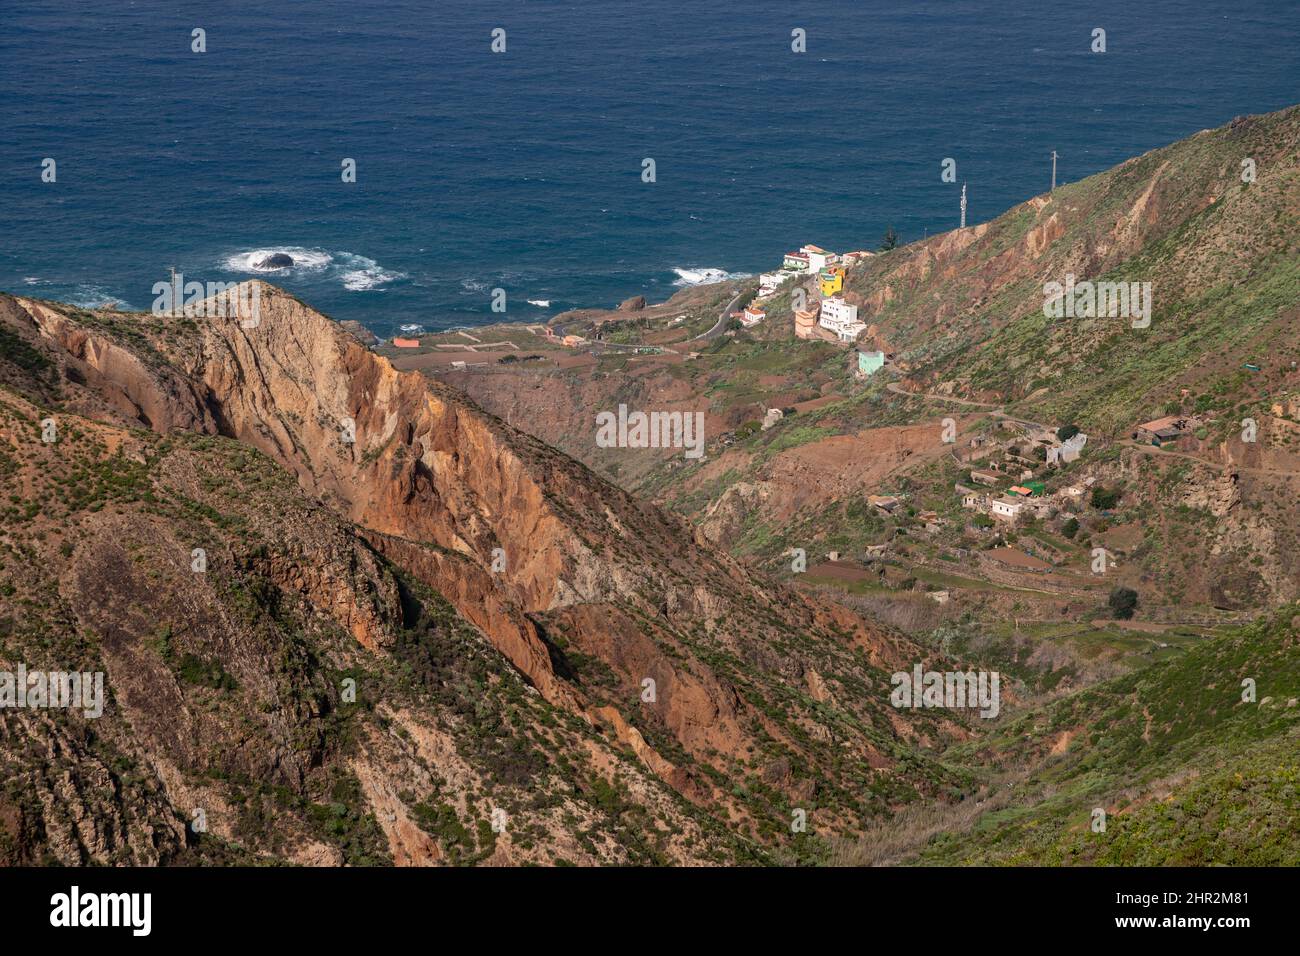 Le vilage d'Almaciga sur la côte nord de Ténérife, îles Canaries Banque D'Images